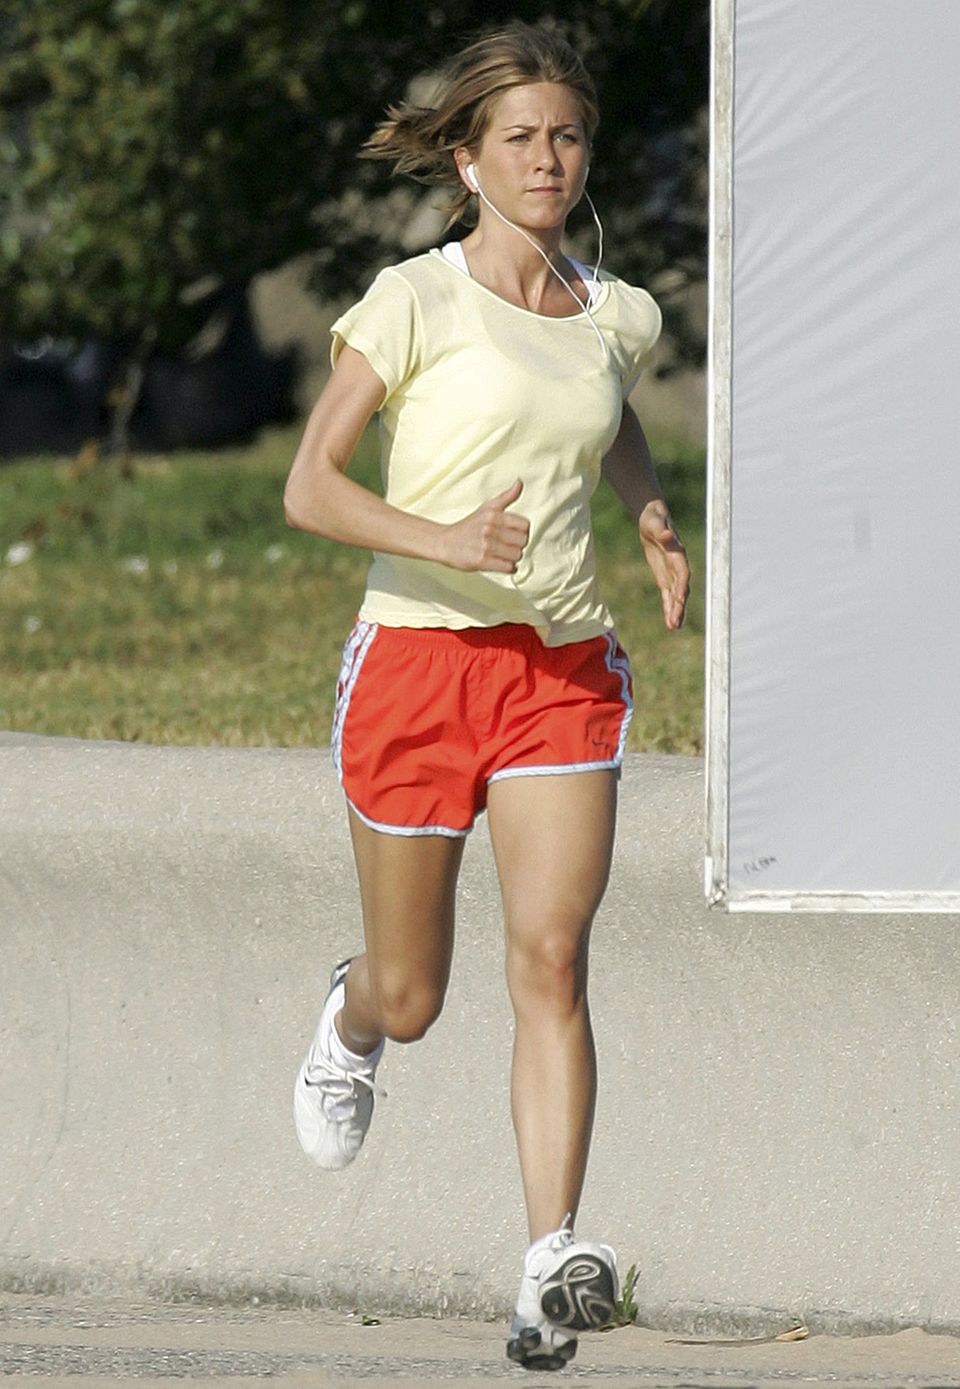 Sportskanone: Gleich zwei Trainingseinheiten pro Tag stehen bei Jennifer Aniston auf dem Programm.